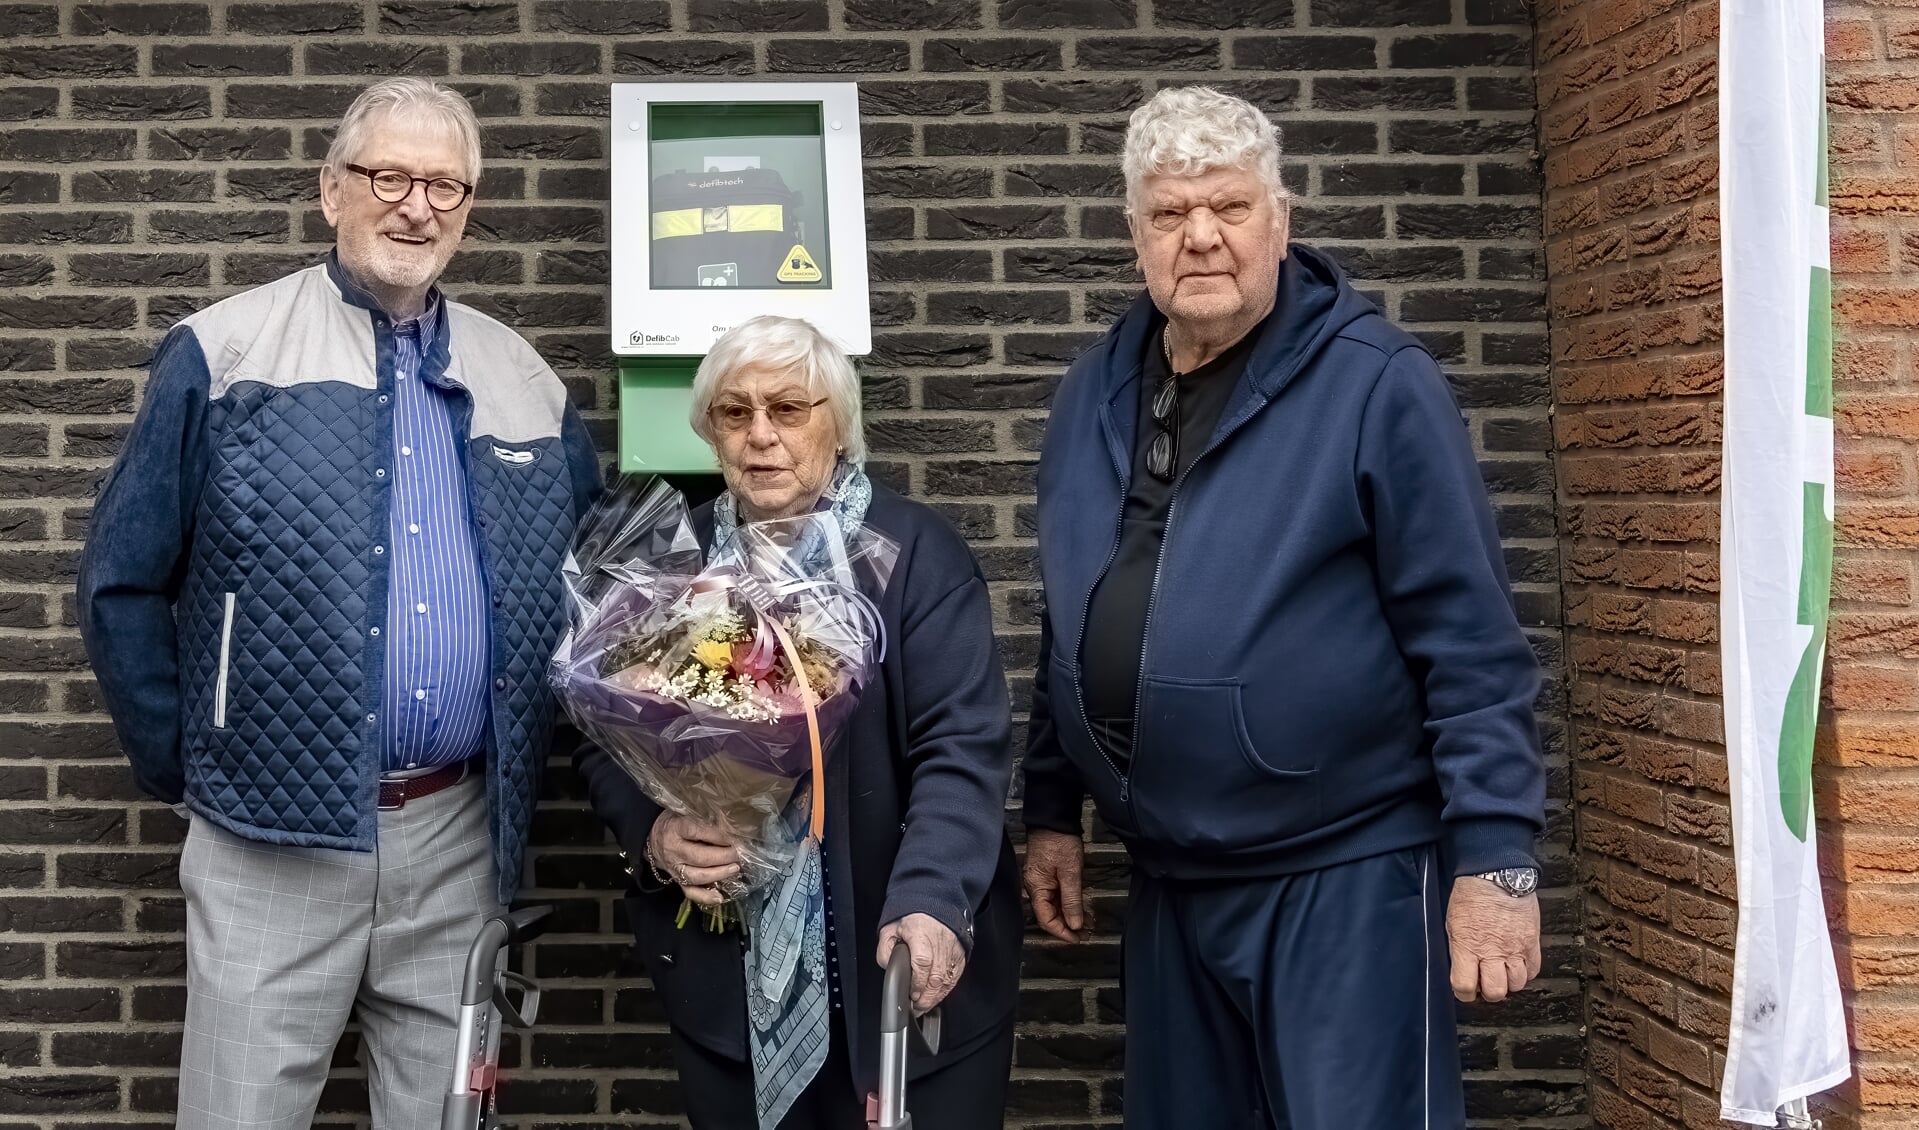 De oudste bewoonster Sonja van der Zee, hier geflankeerd door Maarten Kuiper (links) en Hans Reijgwart, onthulde de AED.